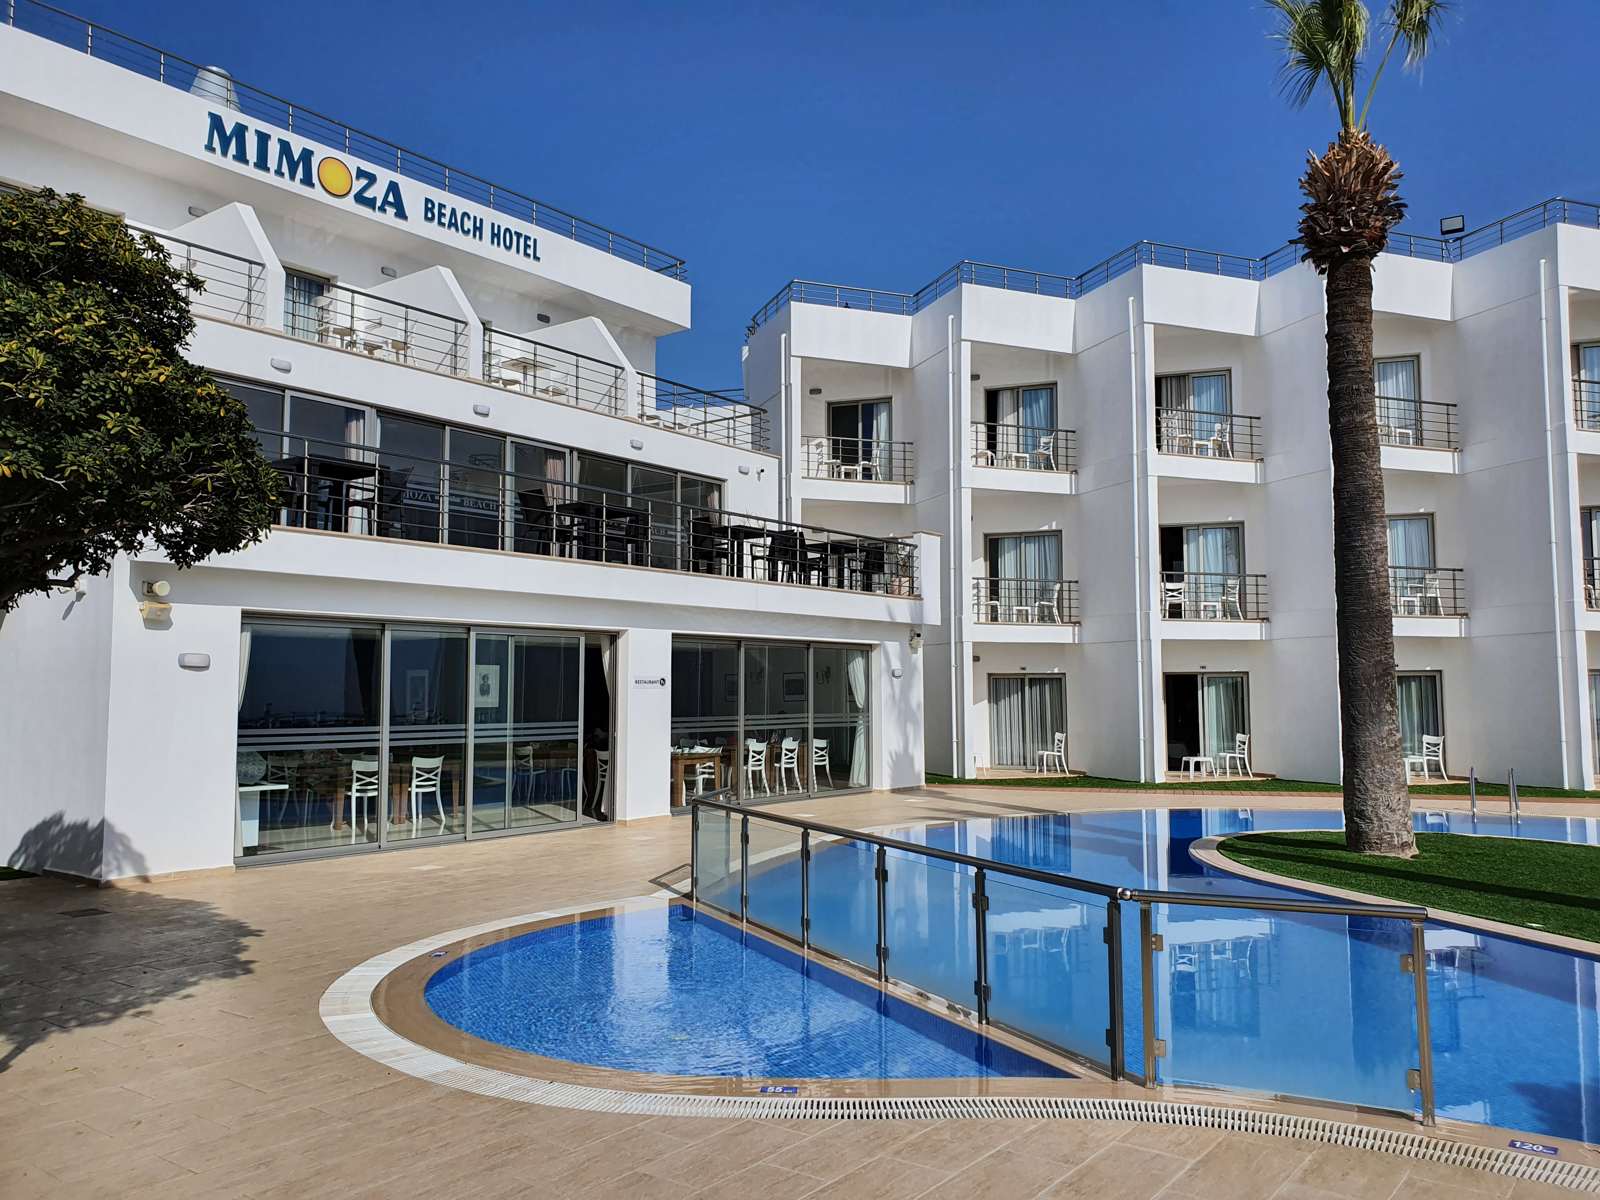 Hauptgebude mit Restaurant und Rezeption/Lobby - Mimoza Beach Hotel in Nordzypern - Lupe Reisen